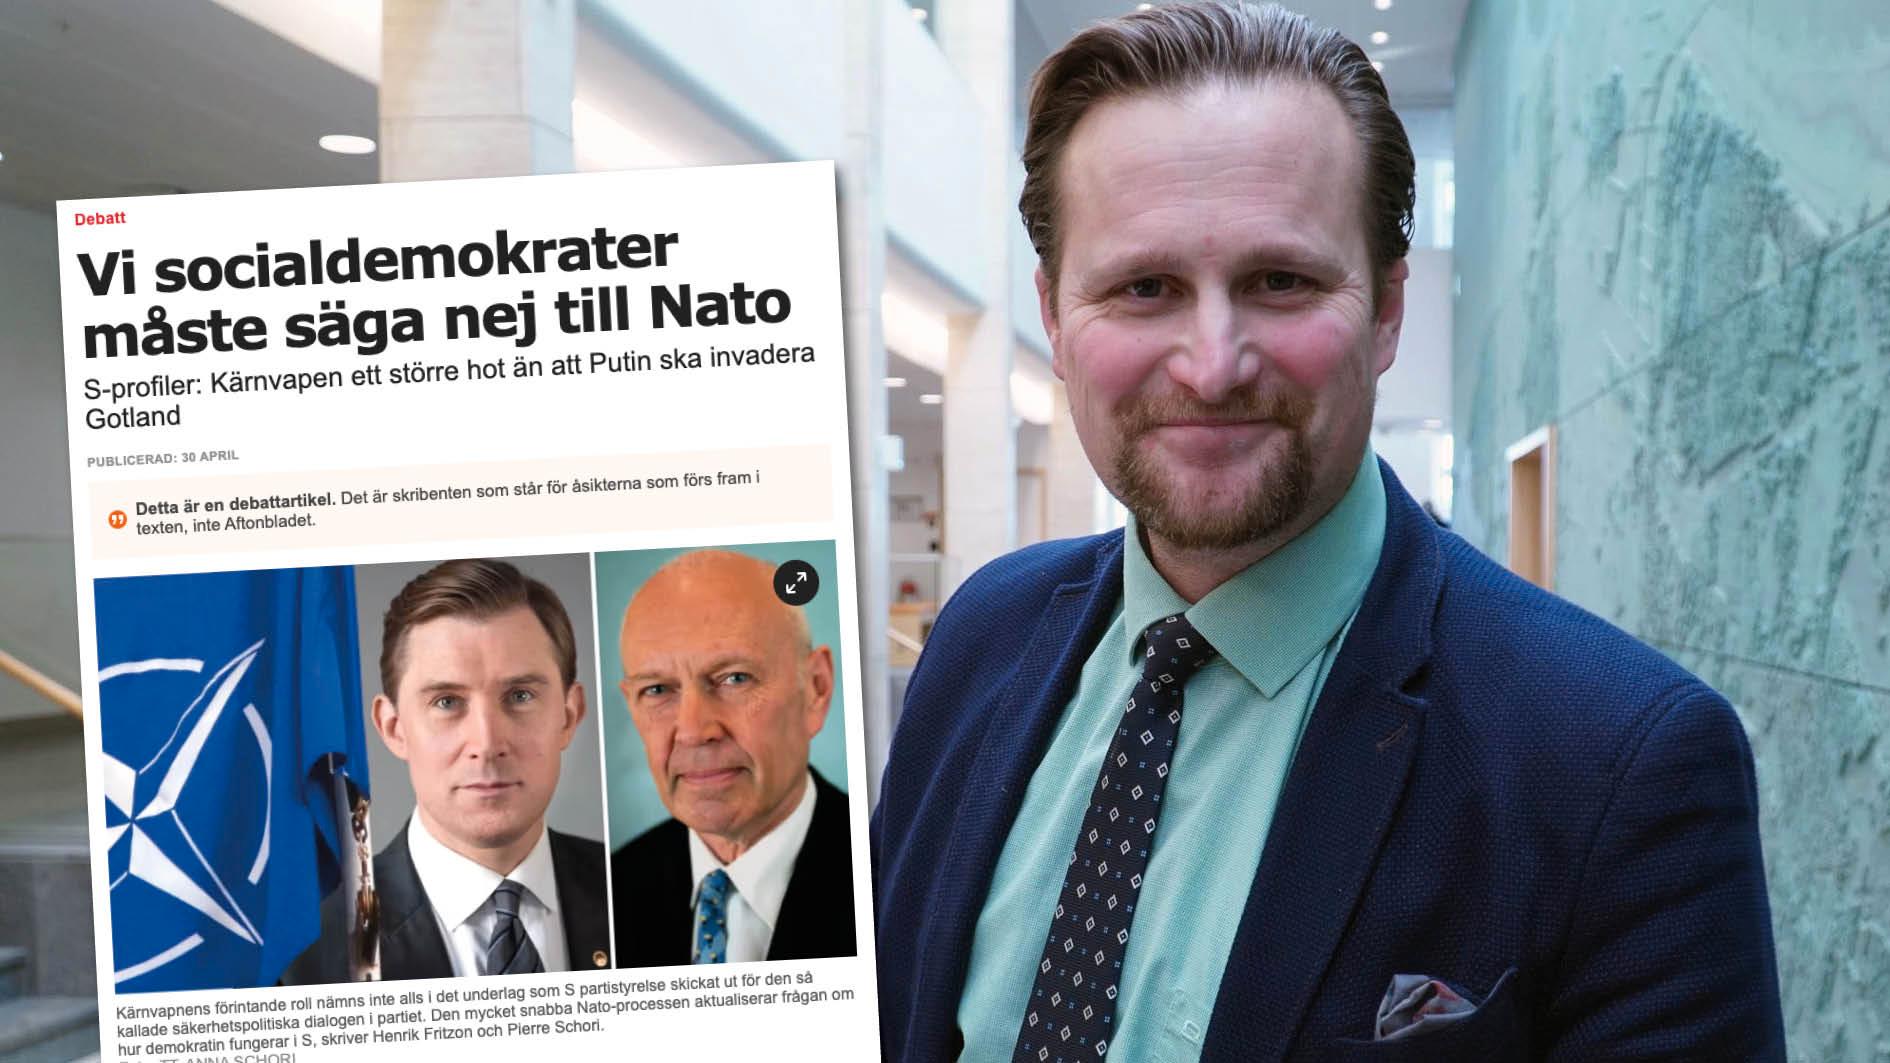 Jag blir förvånad att S gruppledare i Region Skåne, Henrik Fritzon, går ut och profilerar sig som en av de mest namnkunniga förespråkarna för det S-märkta Natomotståndet. Det får inte stå oemotsagt, skriver Carl Johan Sonesson.